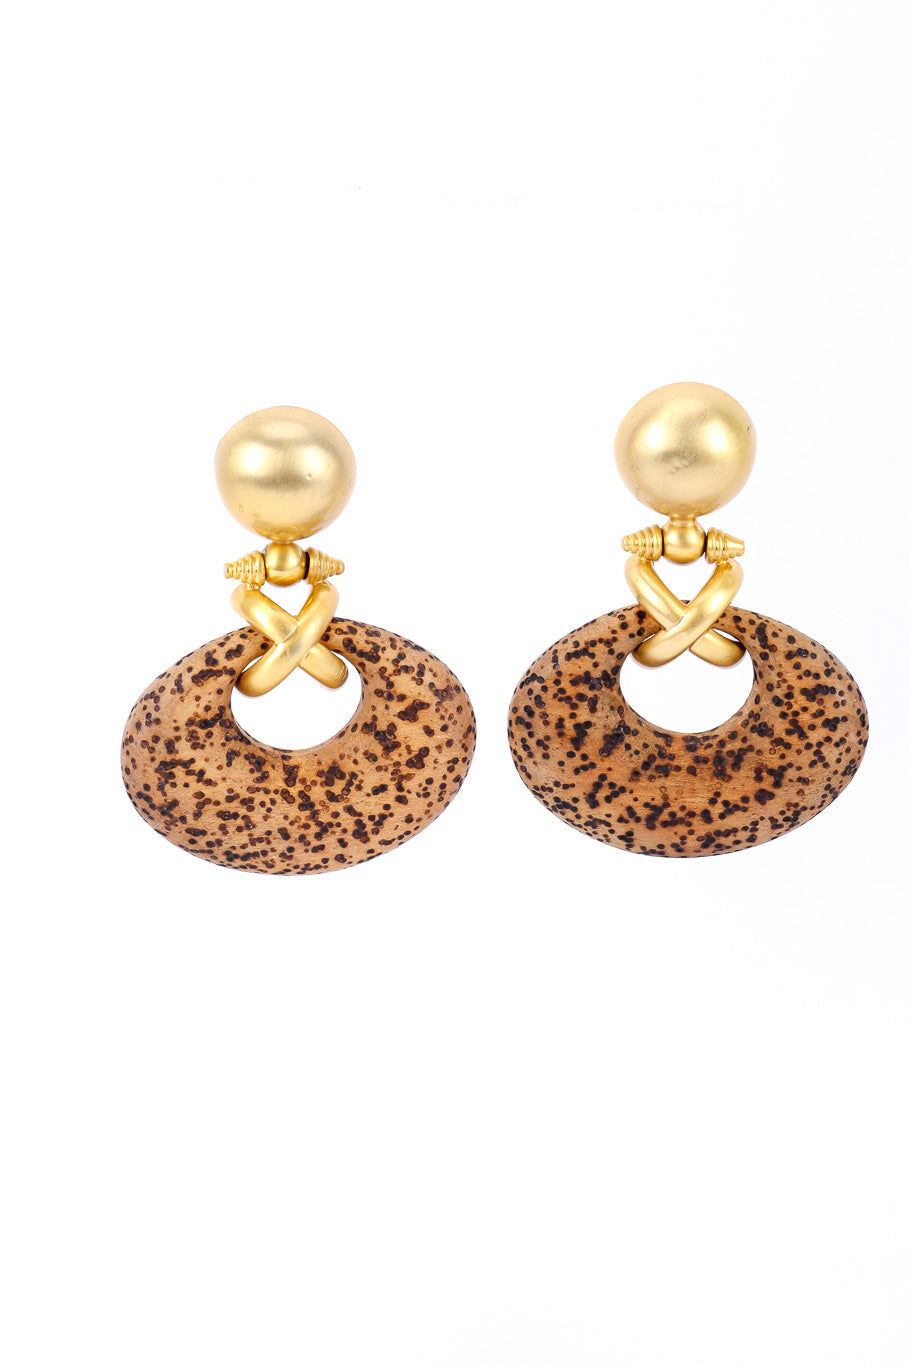 Cork earrings by Gianfranco Ferre on white background side by side @recessla